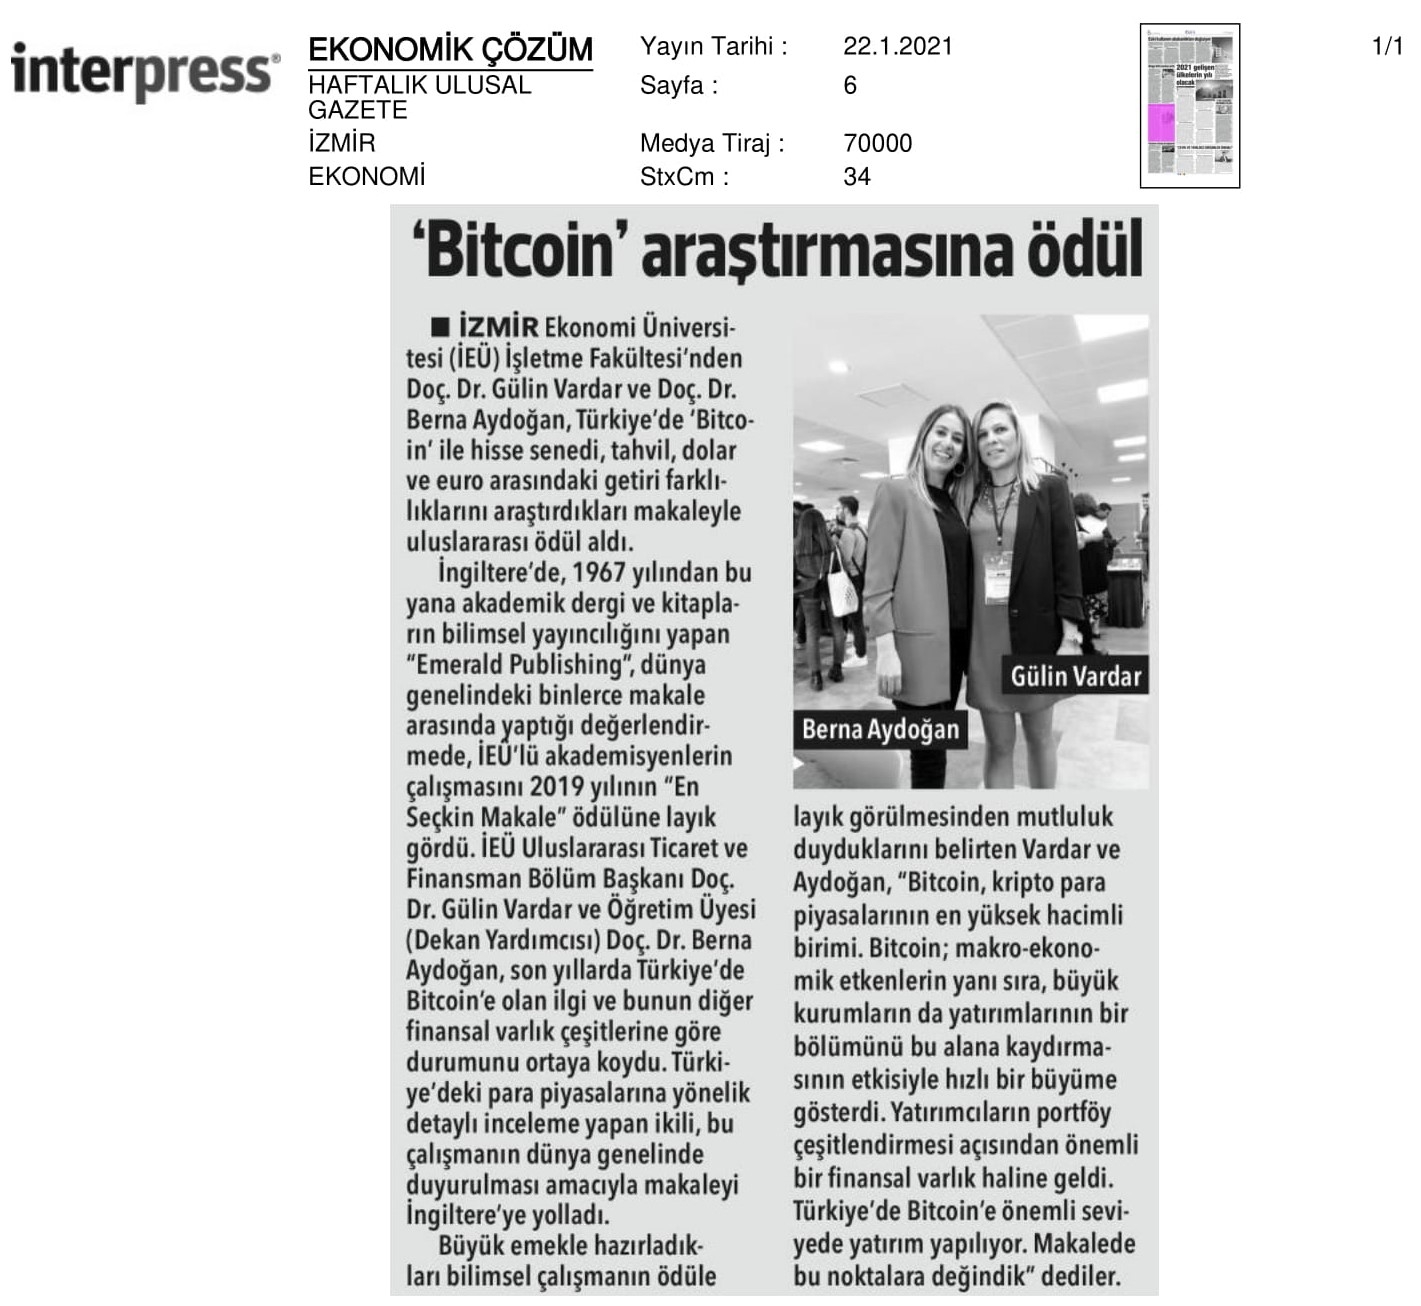 ‘Bitcoin’ araştırmasına uluslararası ödül